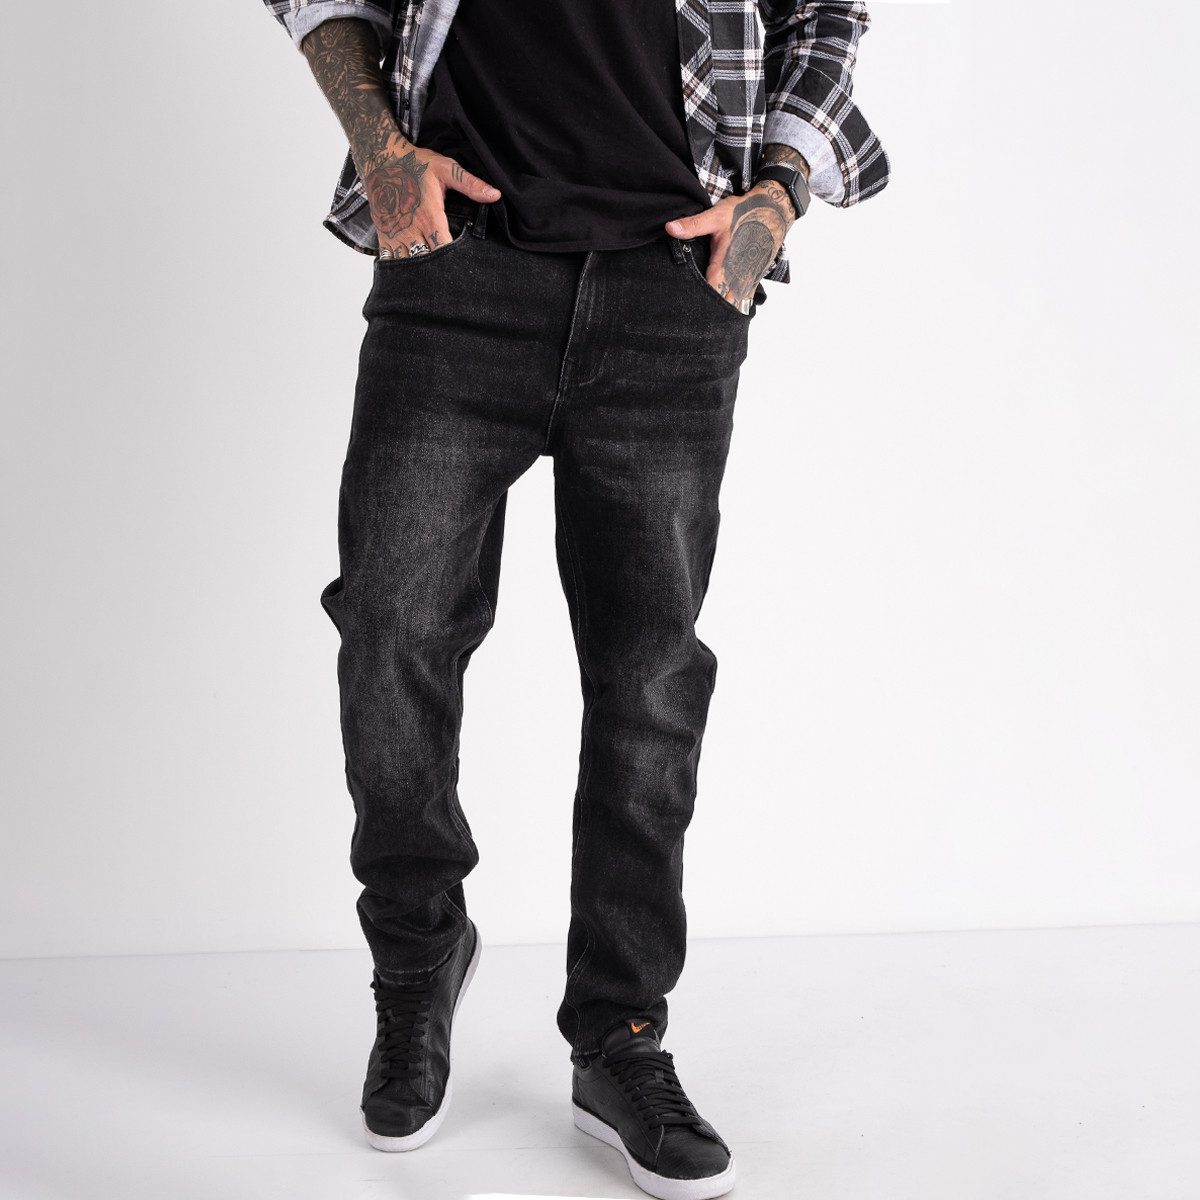 2143 V.J.Ray  джинсы мужские темно-серые стрейчевые (8 ед. размеры: 28.29.30.31.32.33.34.36)